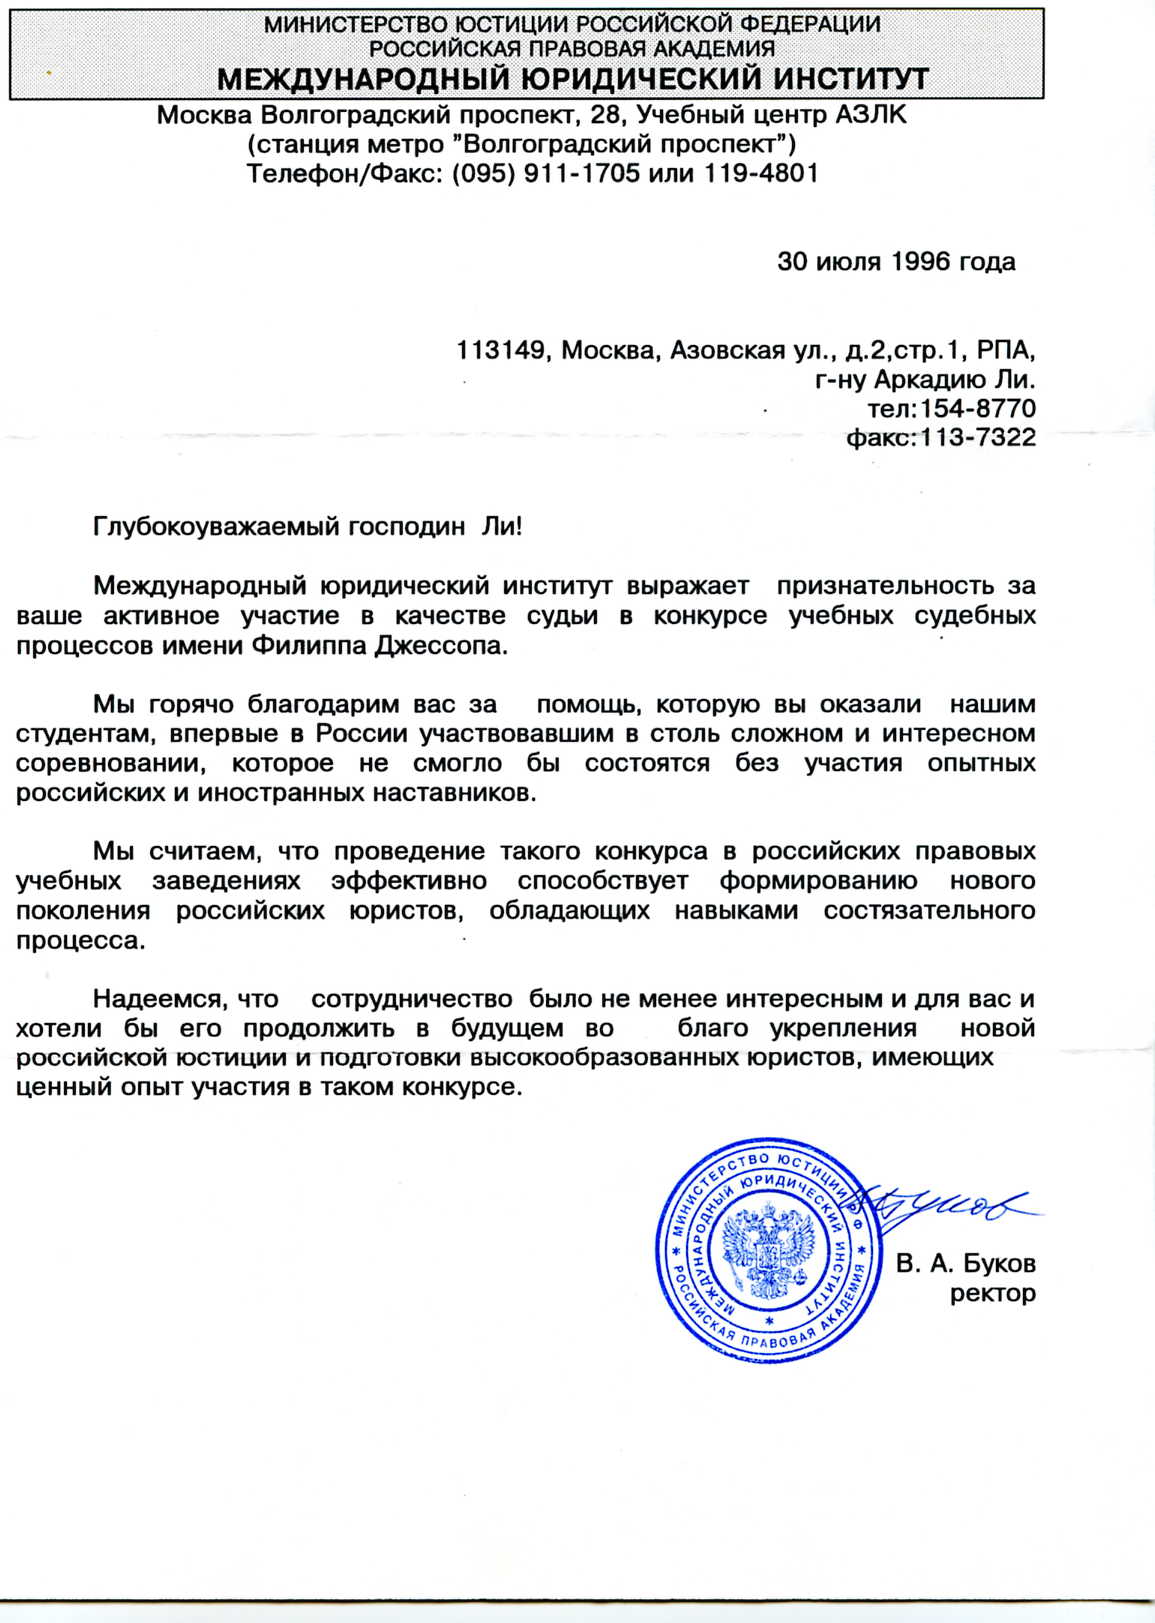 Рекомендации Московского юридического института